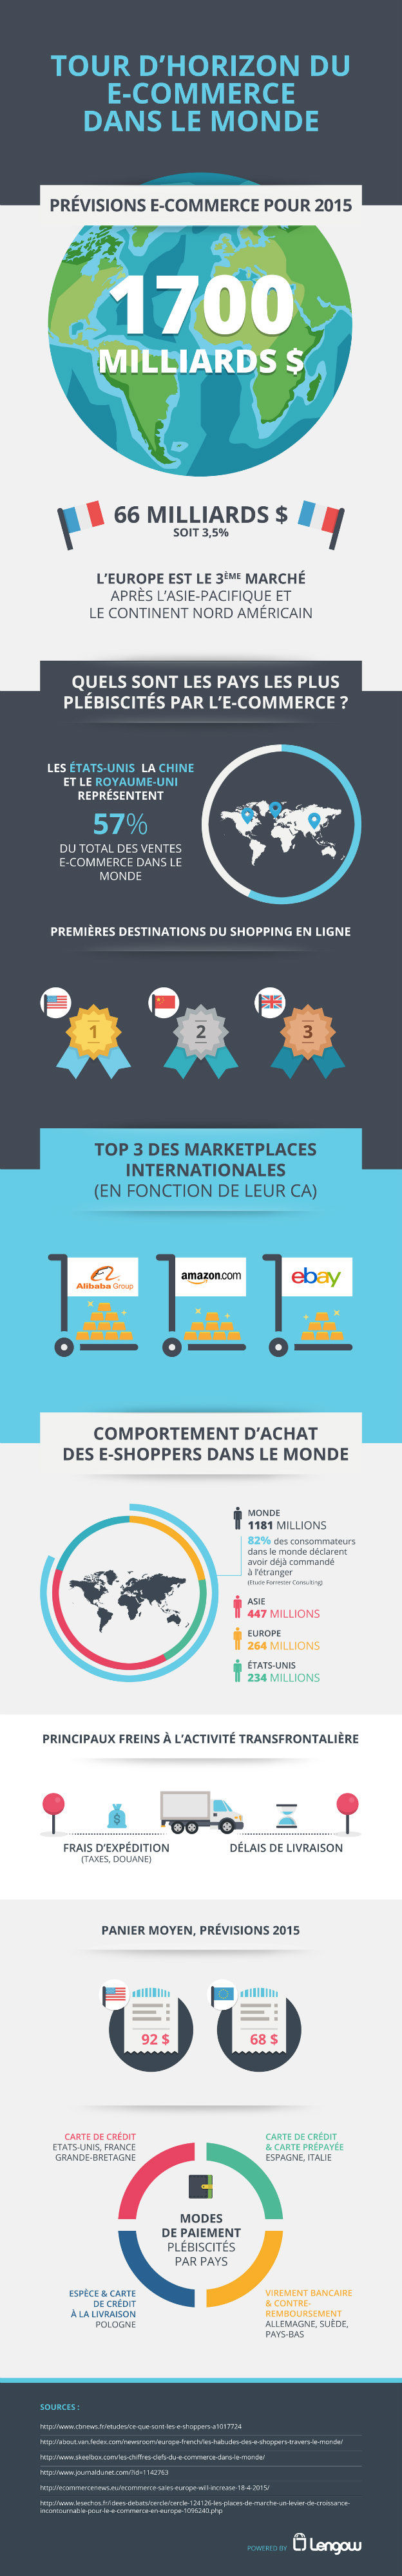 E-commerce-previsions-2015